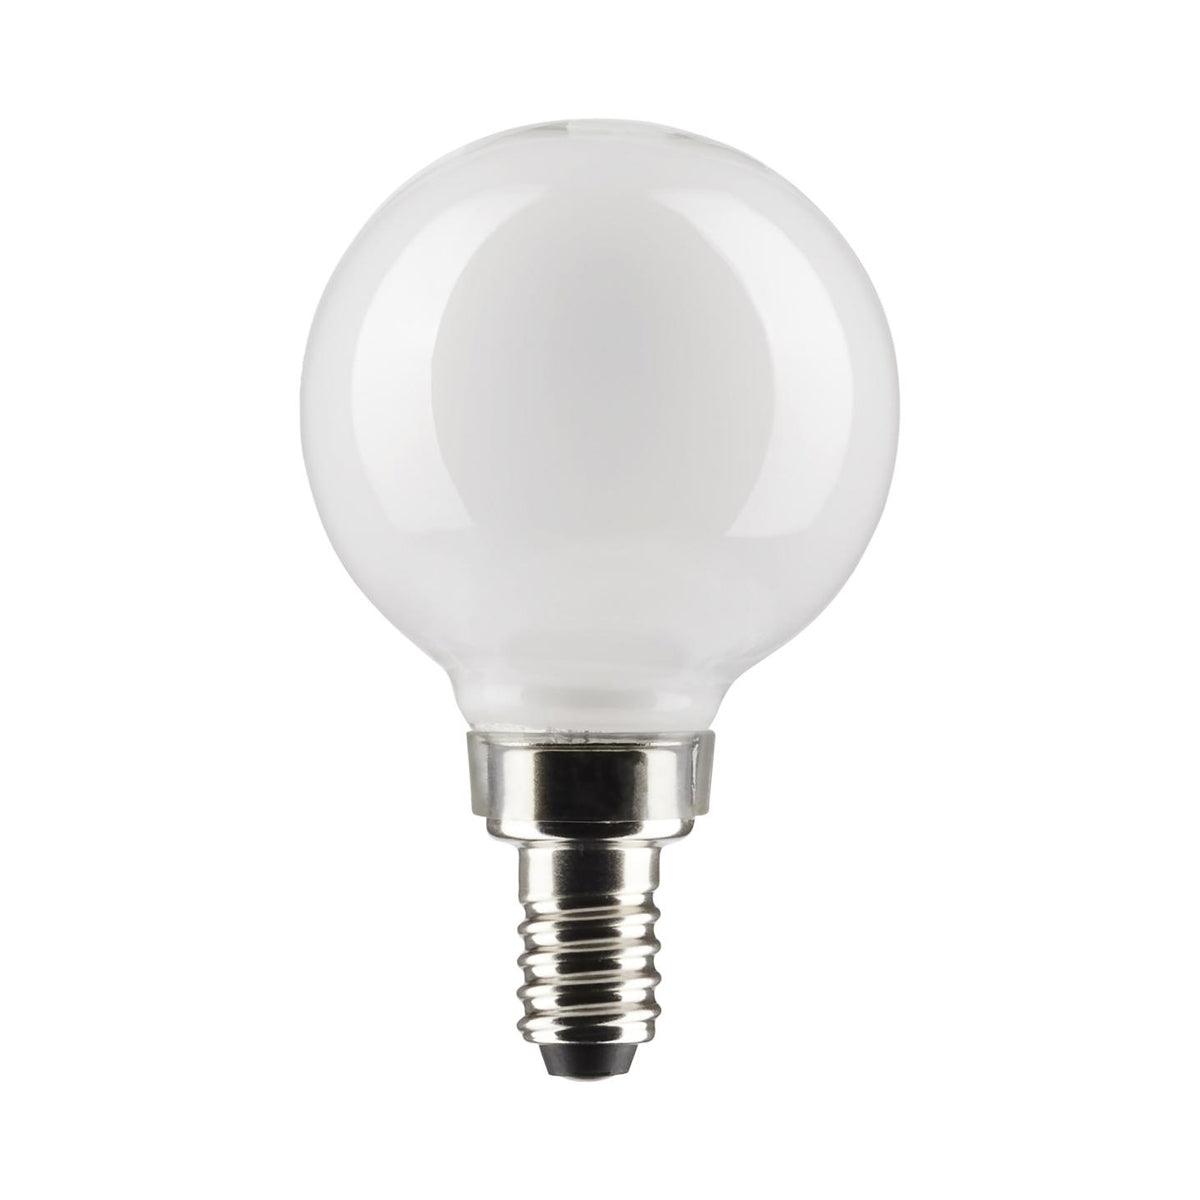 G16.5 LED Globe Bulb, 5 Watt, 350 Lumens, 2700K, E12 Candelabra Base, Frosted Finish, Pack Of 2